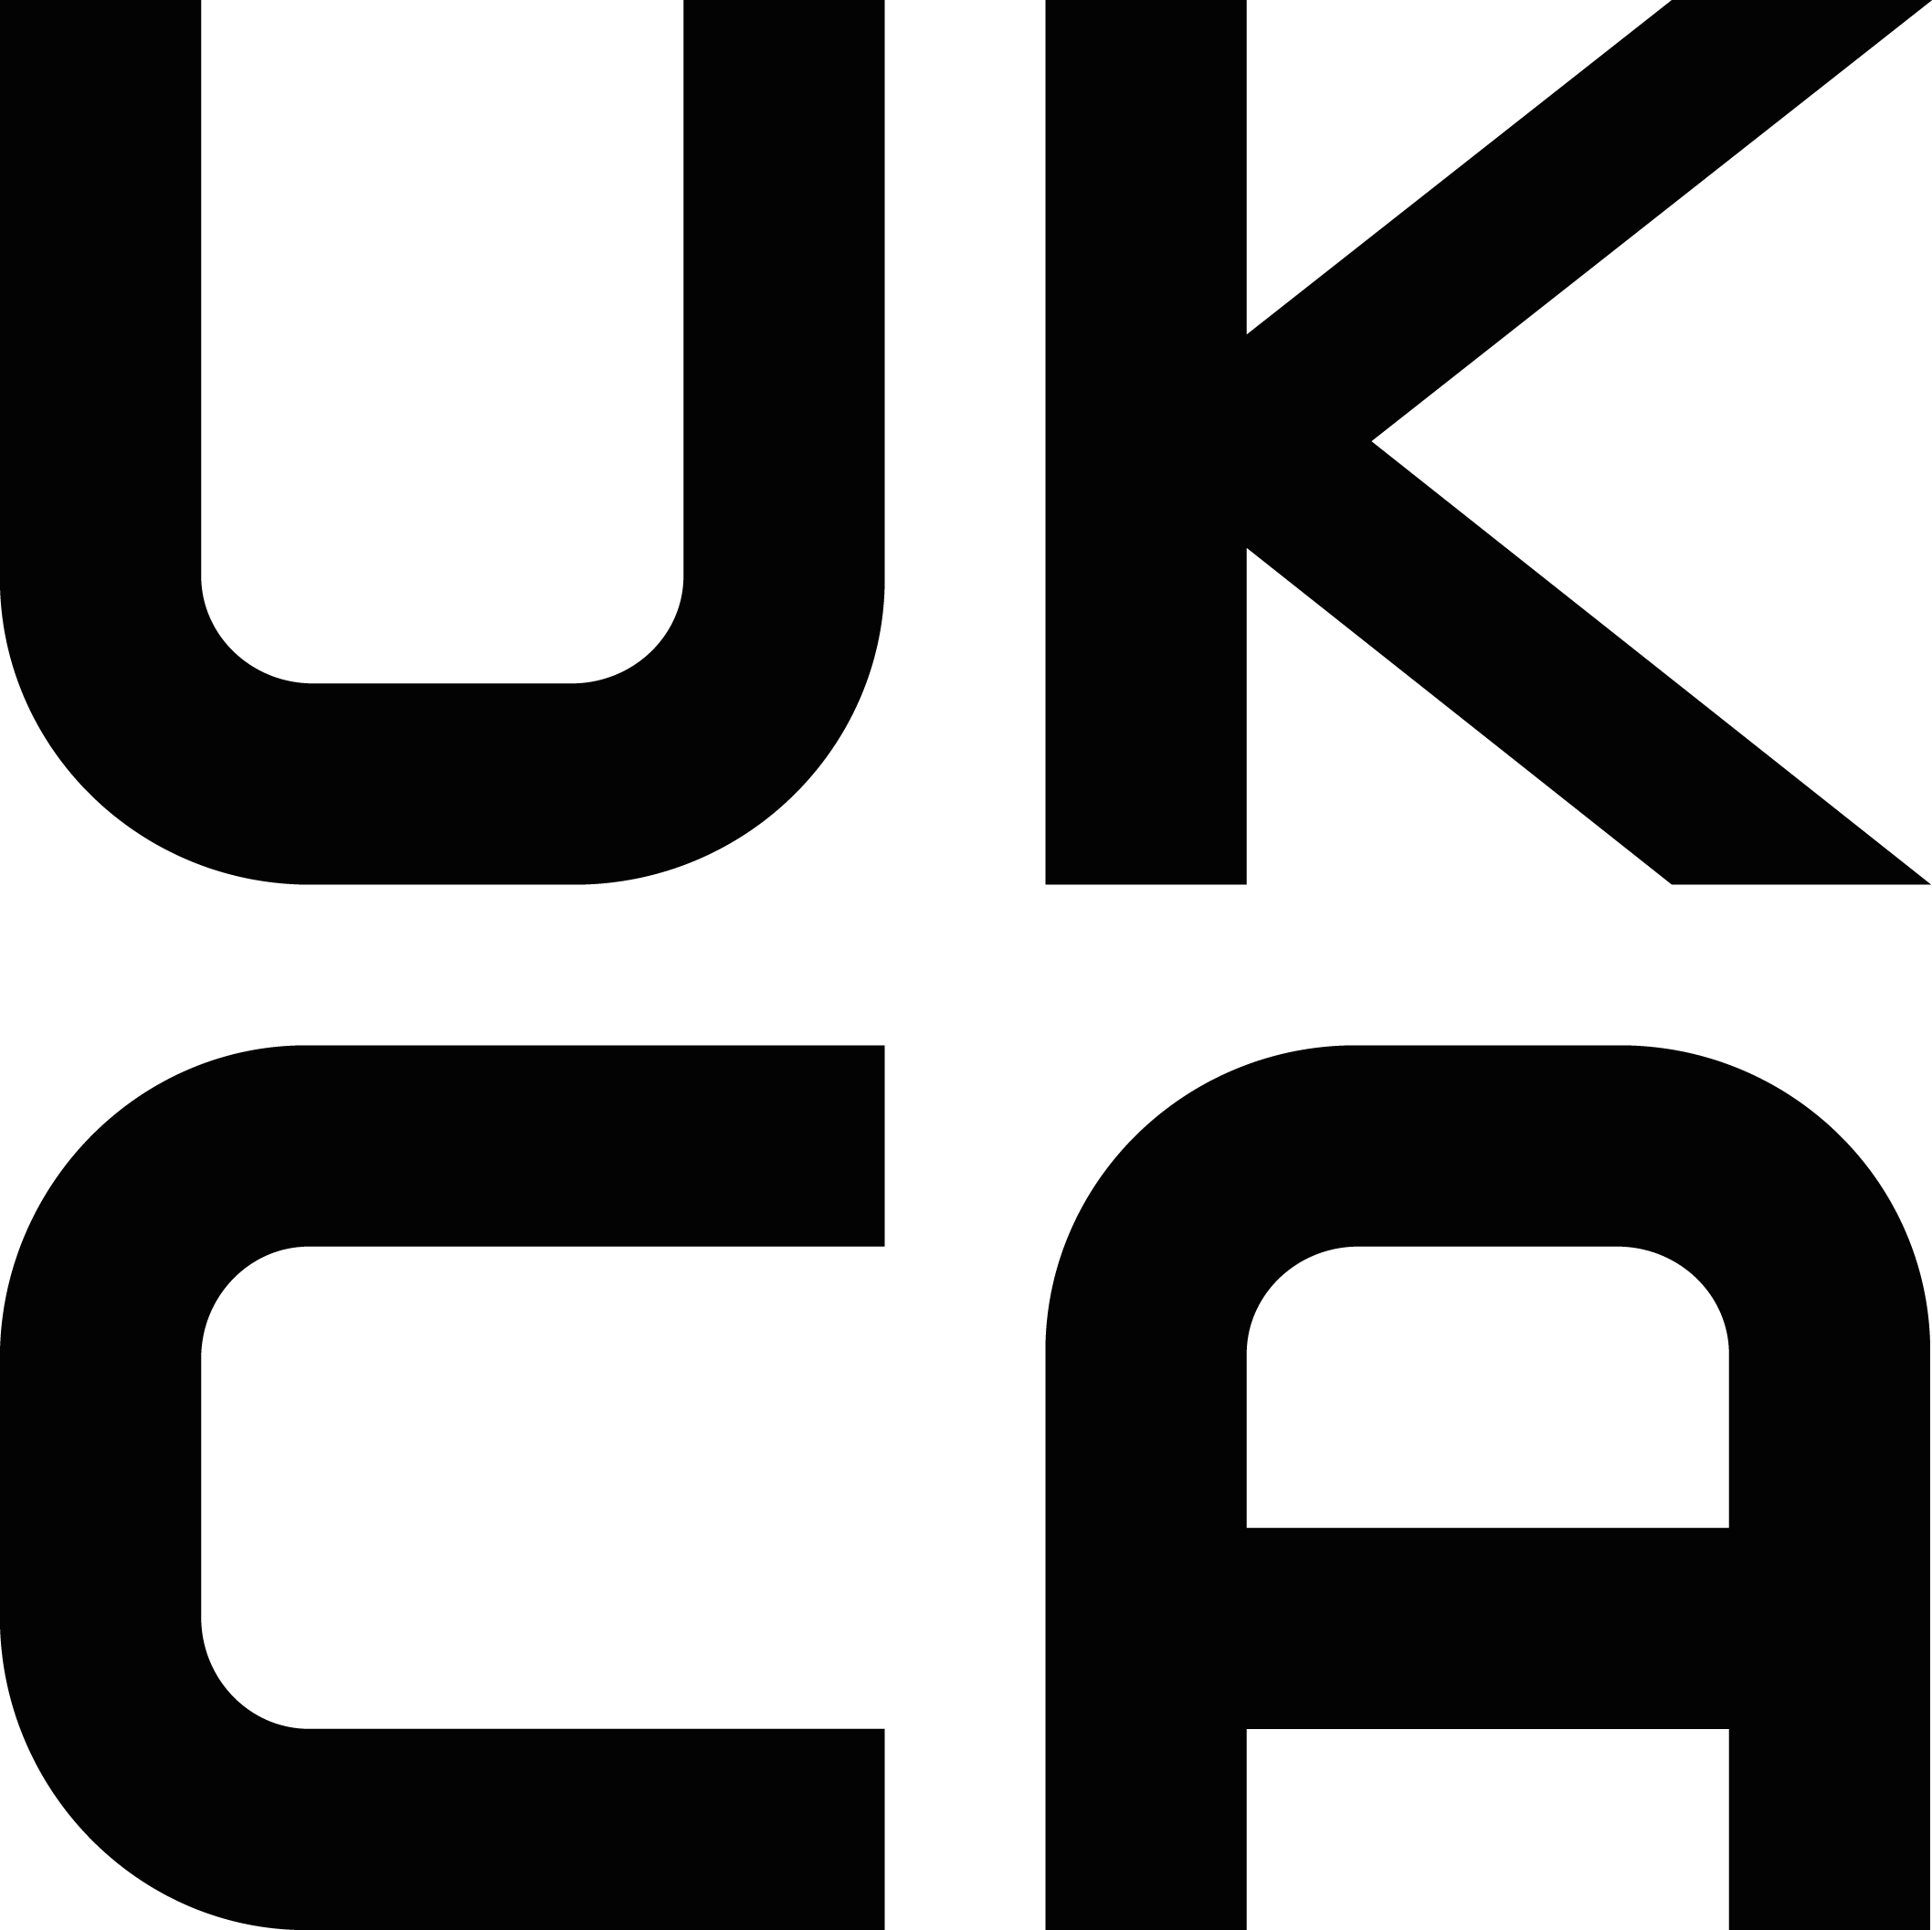 UKCA symbole